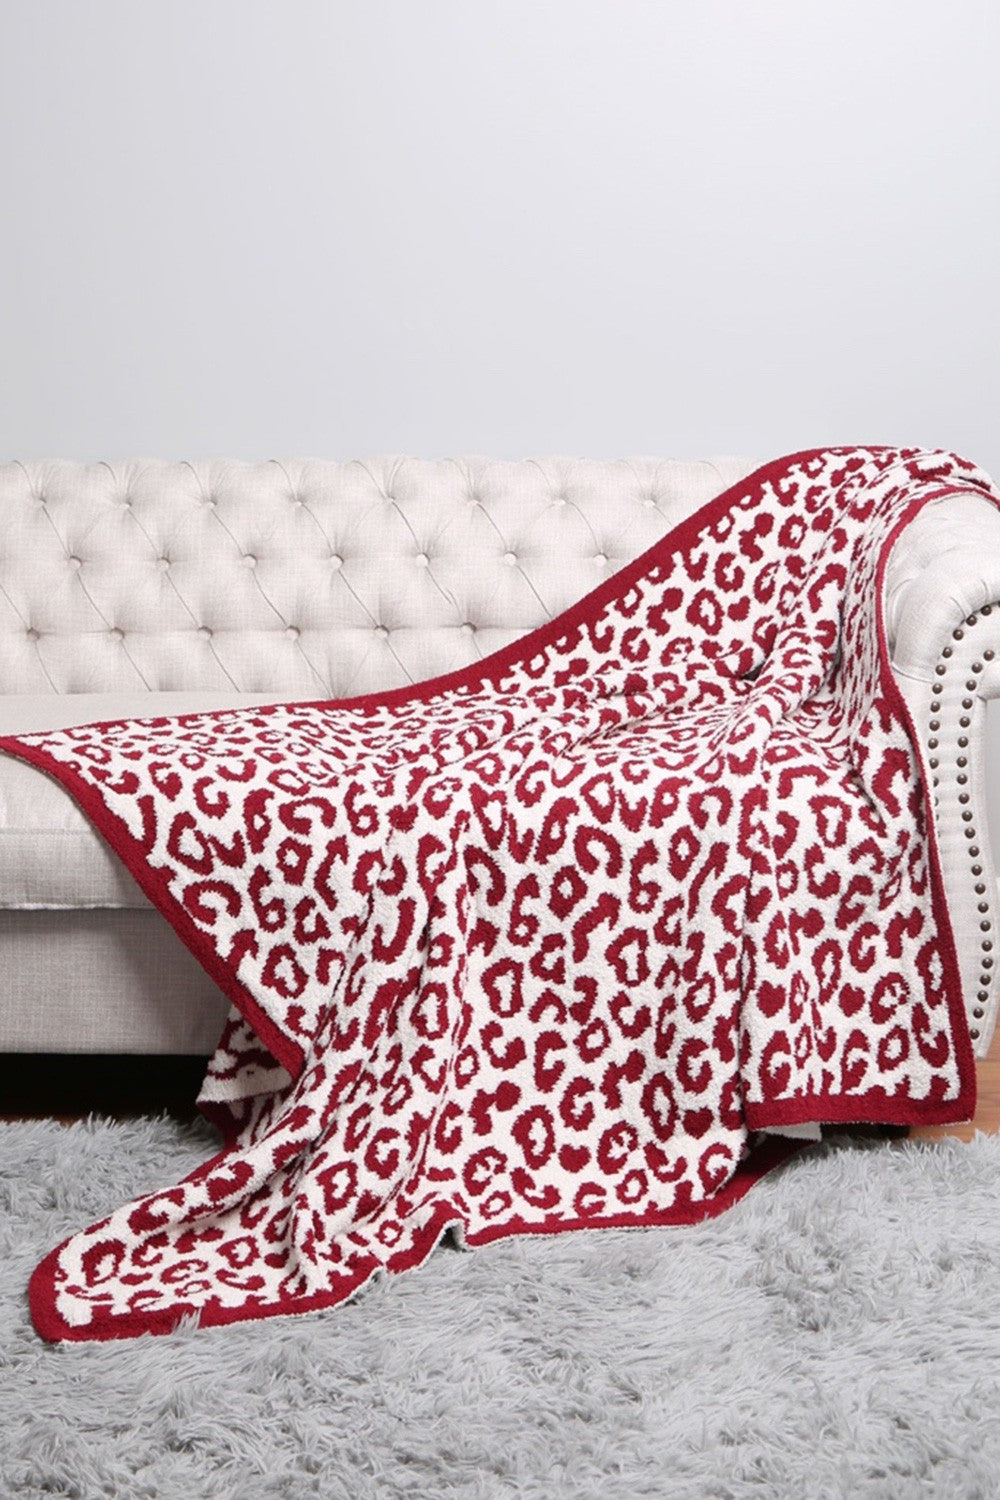 Leopard Patterned Blanket